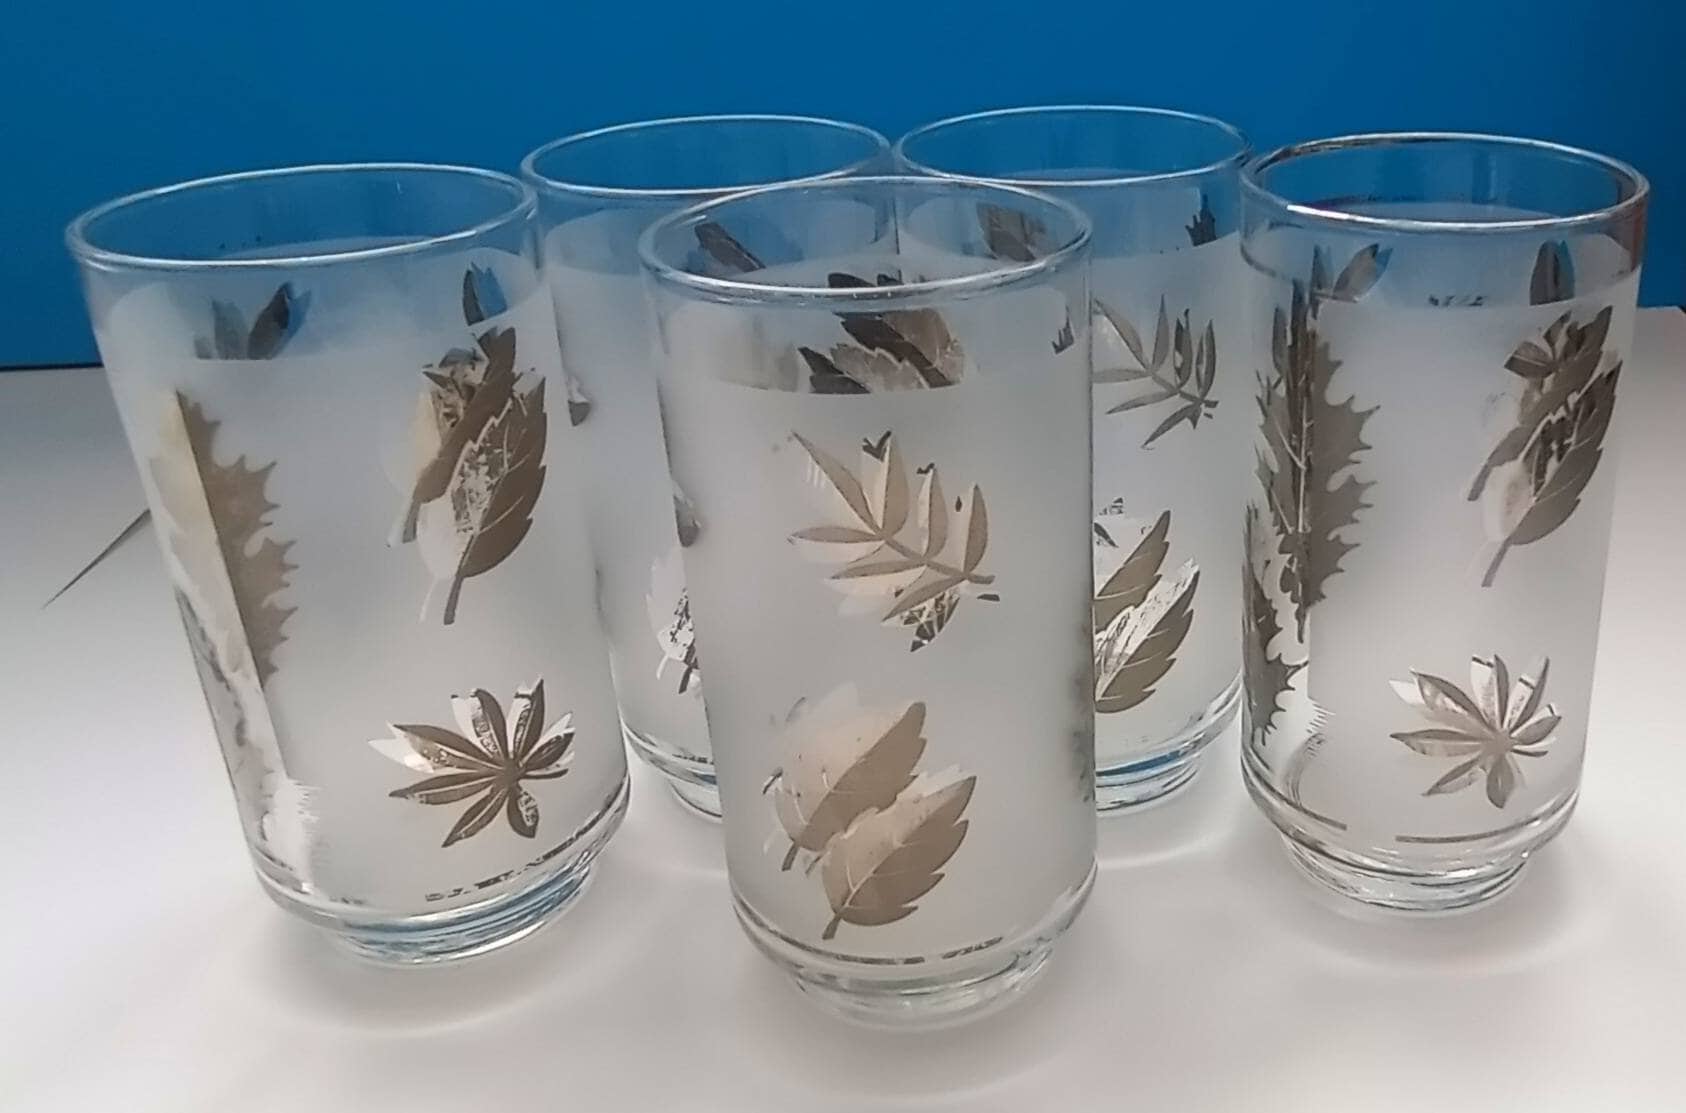 Mid Century Modern Drinking Glasses - Set of 5 Vintage Leaf Design